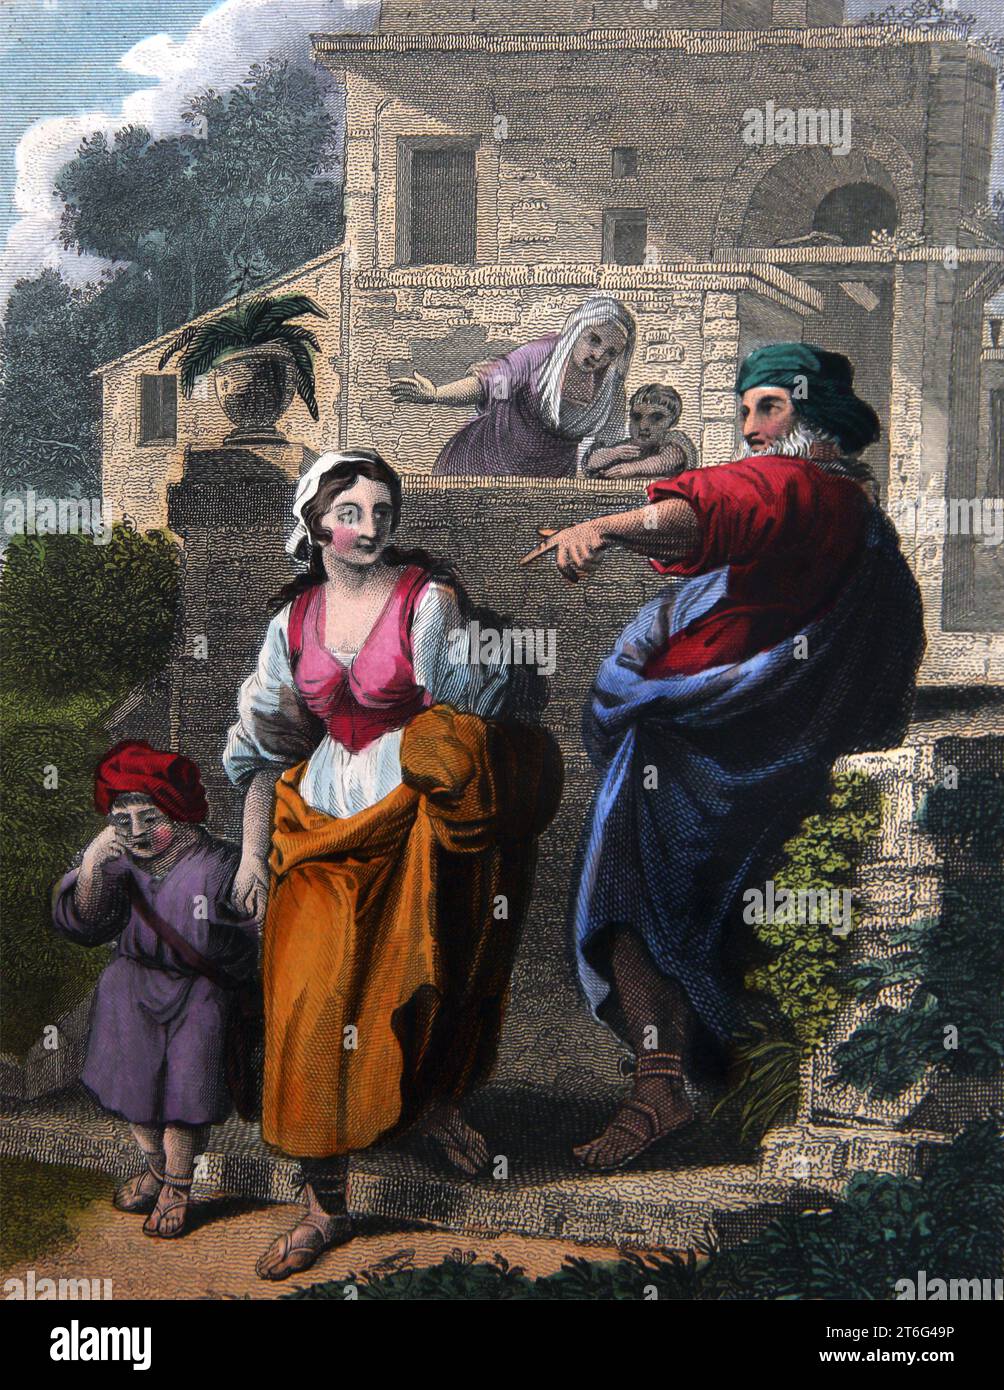 Abbildung von Abraham, der Hagar und seinen Sohn Ishmael aufgibt, während seine Frau Sarah und sein Sohn Isaac (Genesis) aus der selbstinterpretierenden Familie Bib schauen Stockfoto